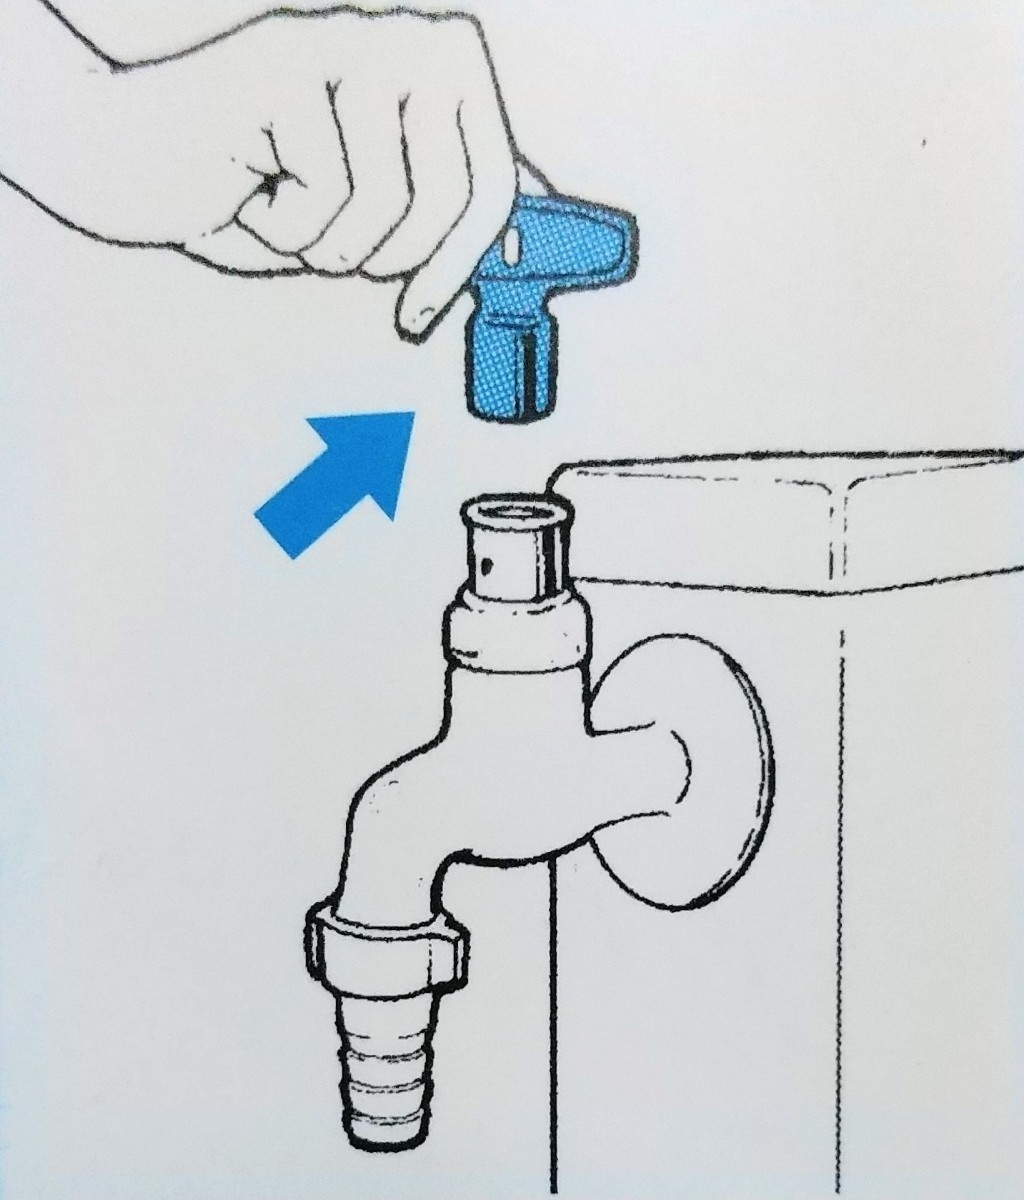 TOTO 共用水栓鍵 THY15122 水栓 ハンドル 蛇口 水道 散水、水栓、水周り